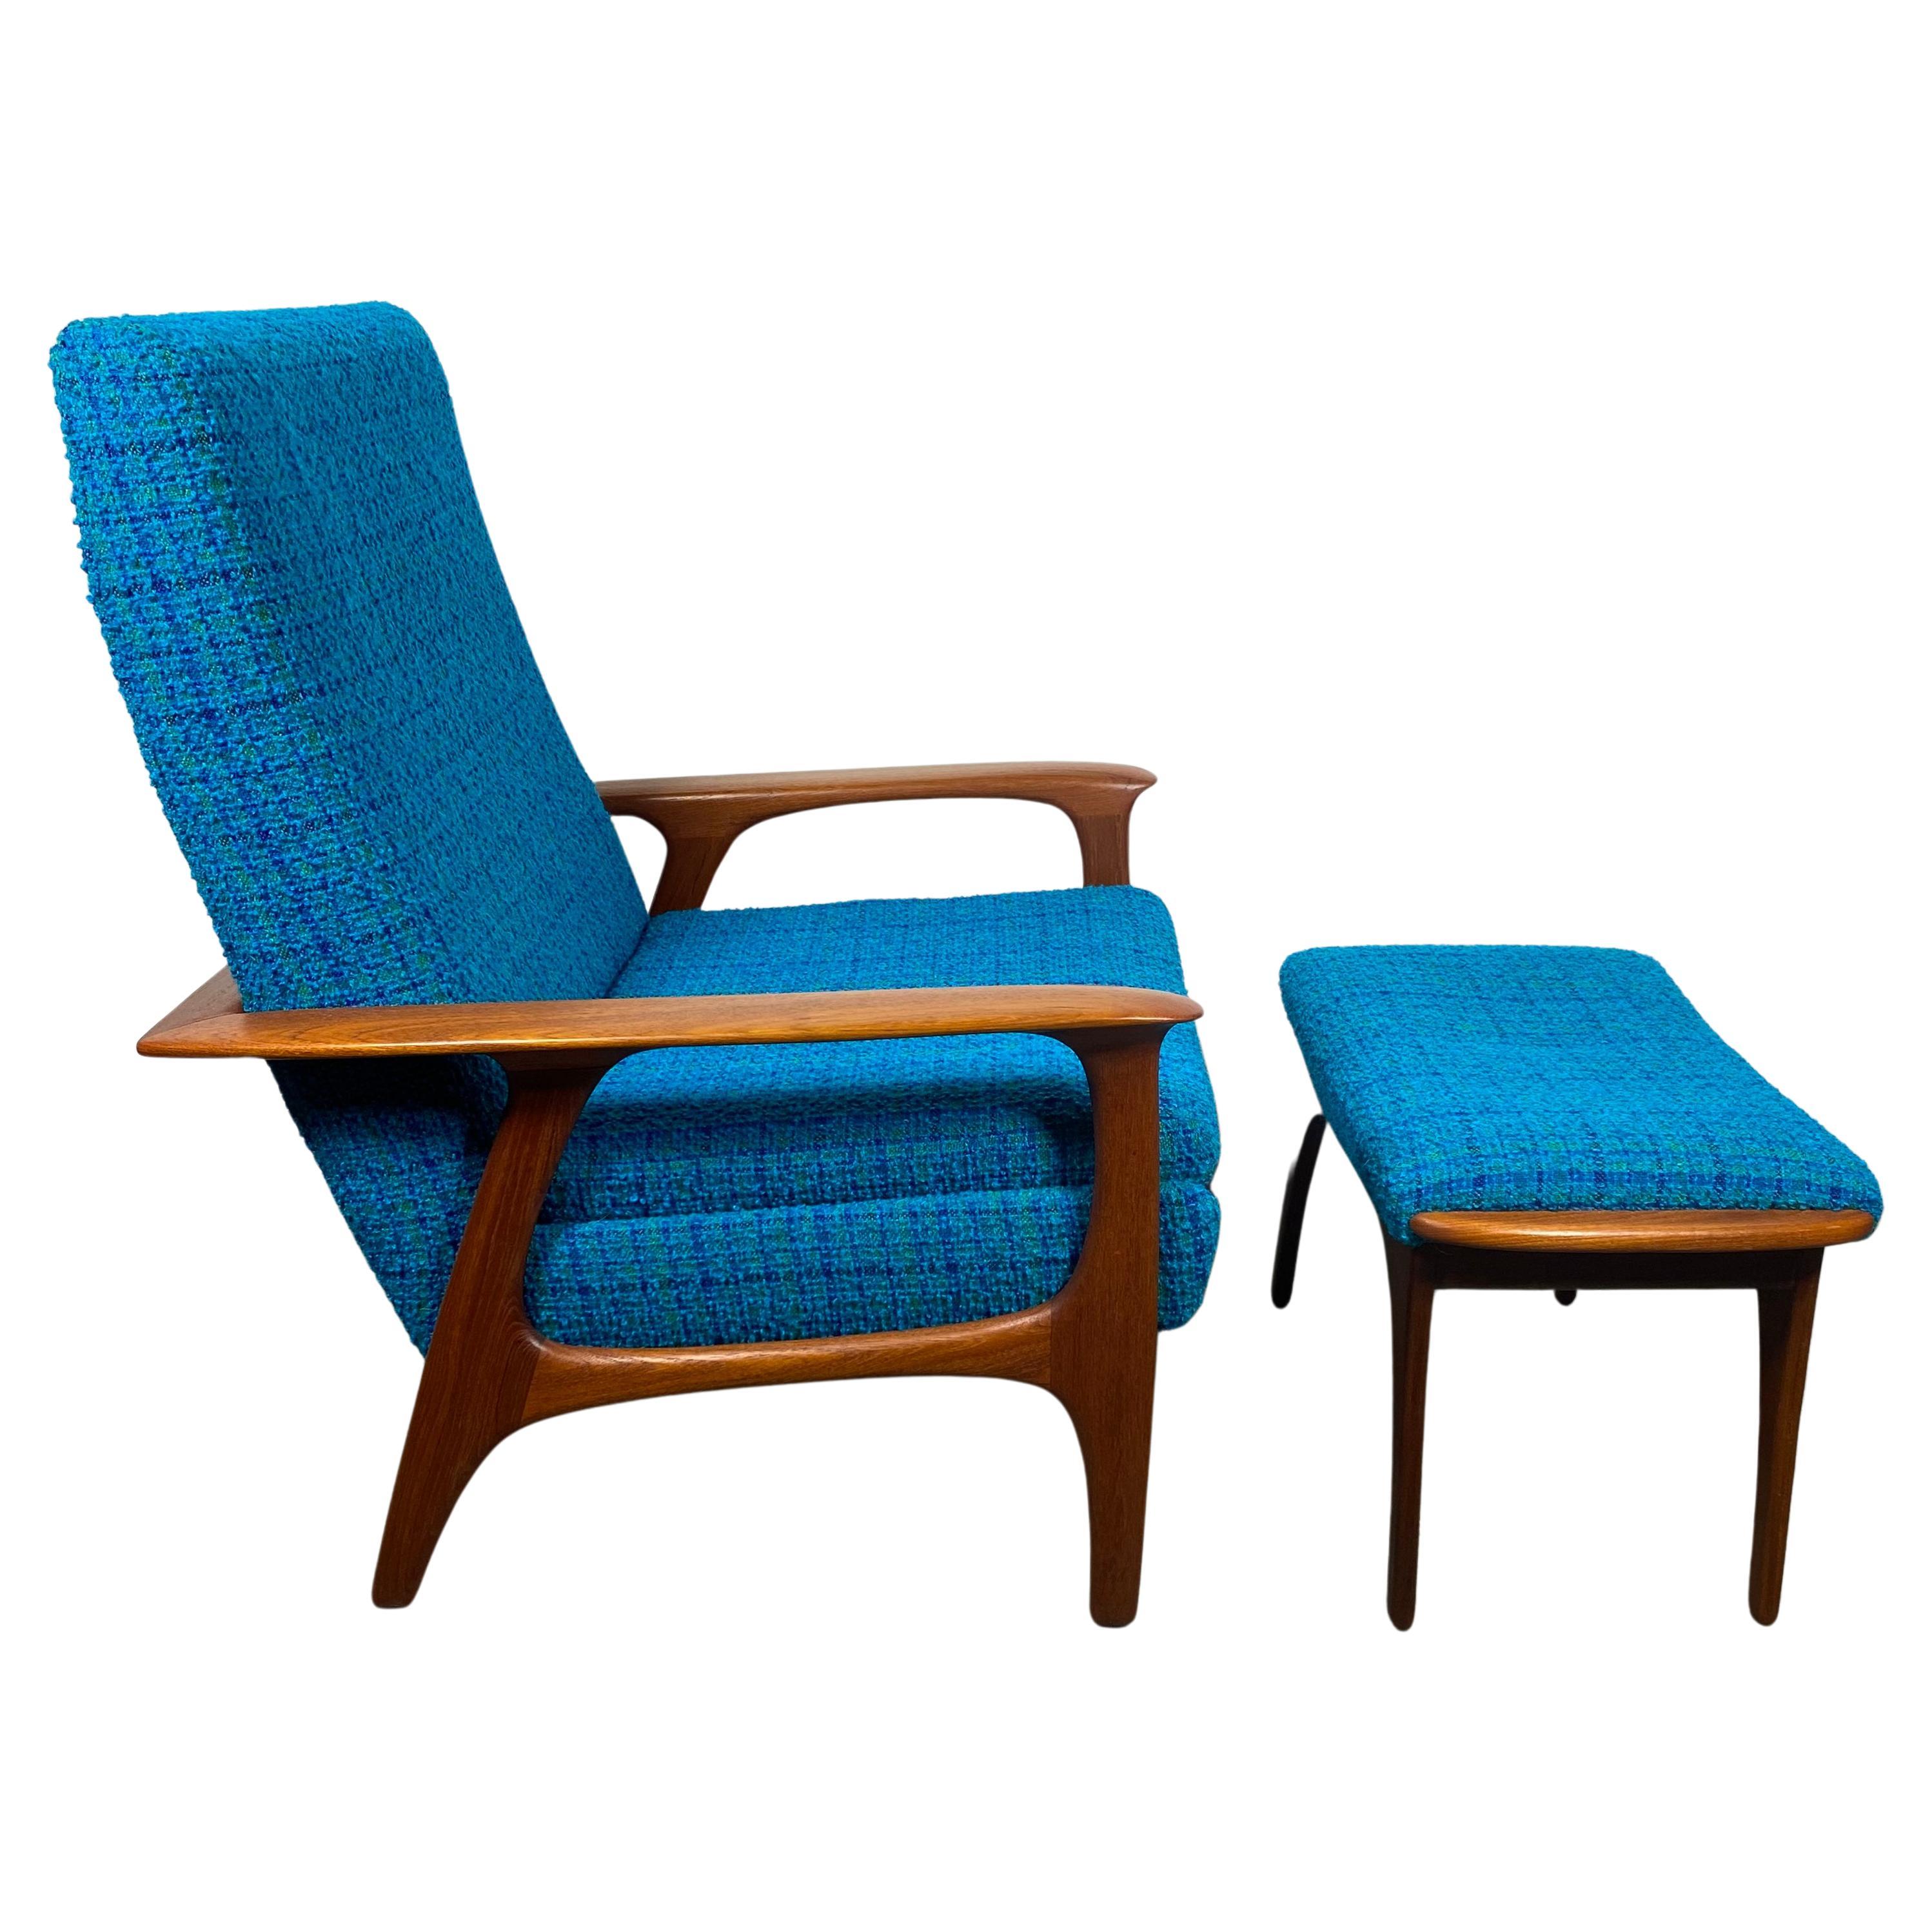 Classic Scandinavian Modern Teak Lounge Chair and Ottoman, after Hans Wegner